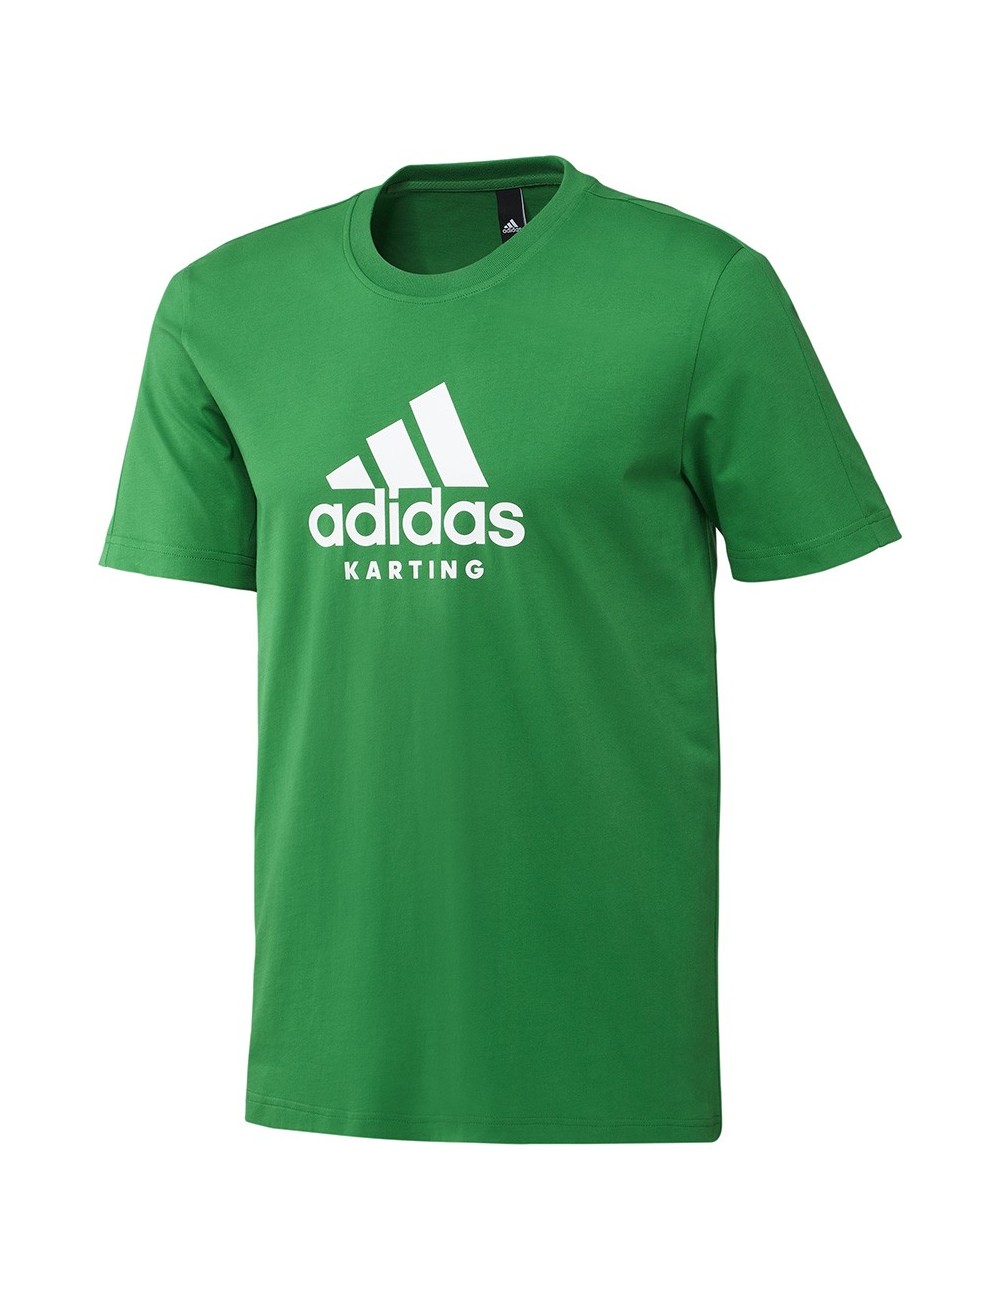 Adidas tee-shirt πράσινο karting